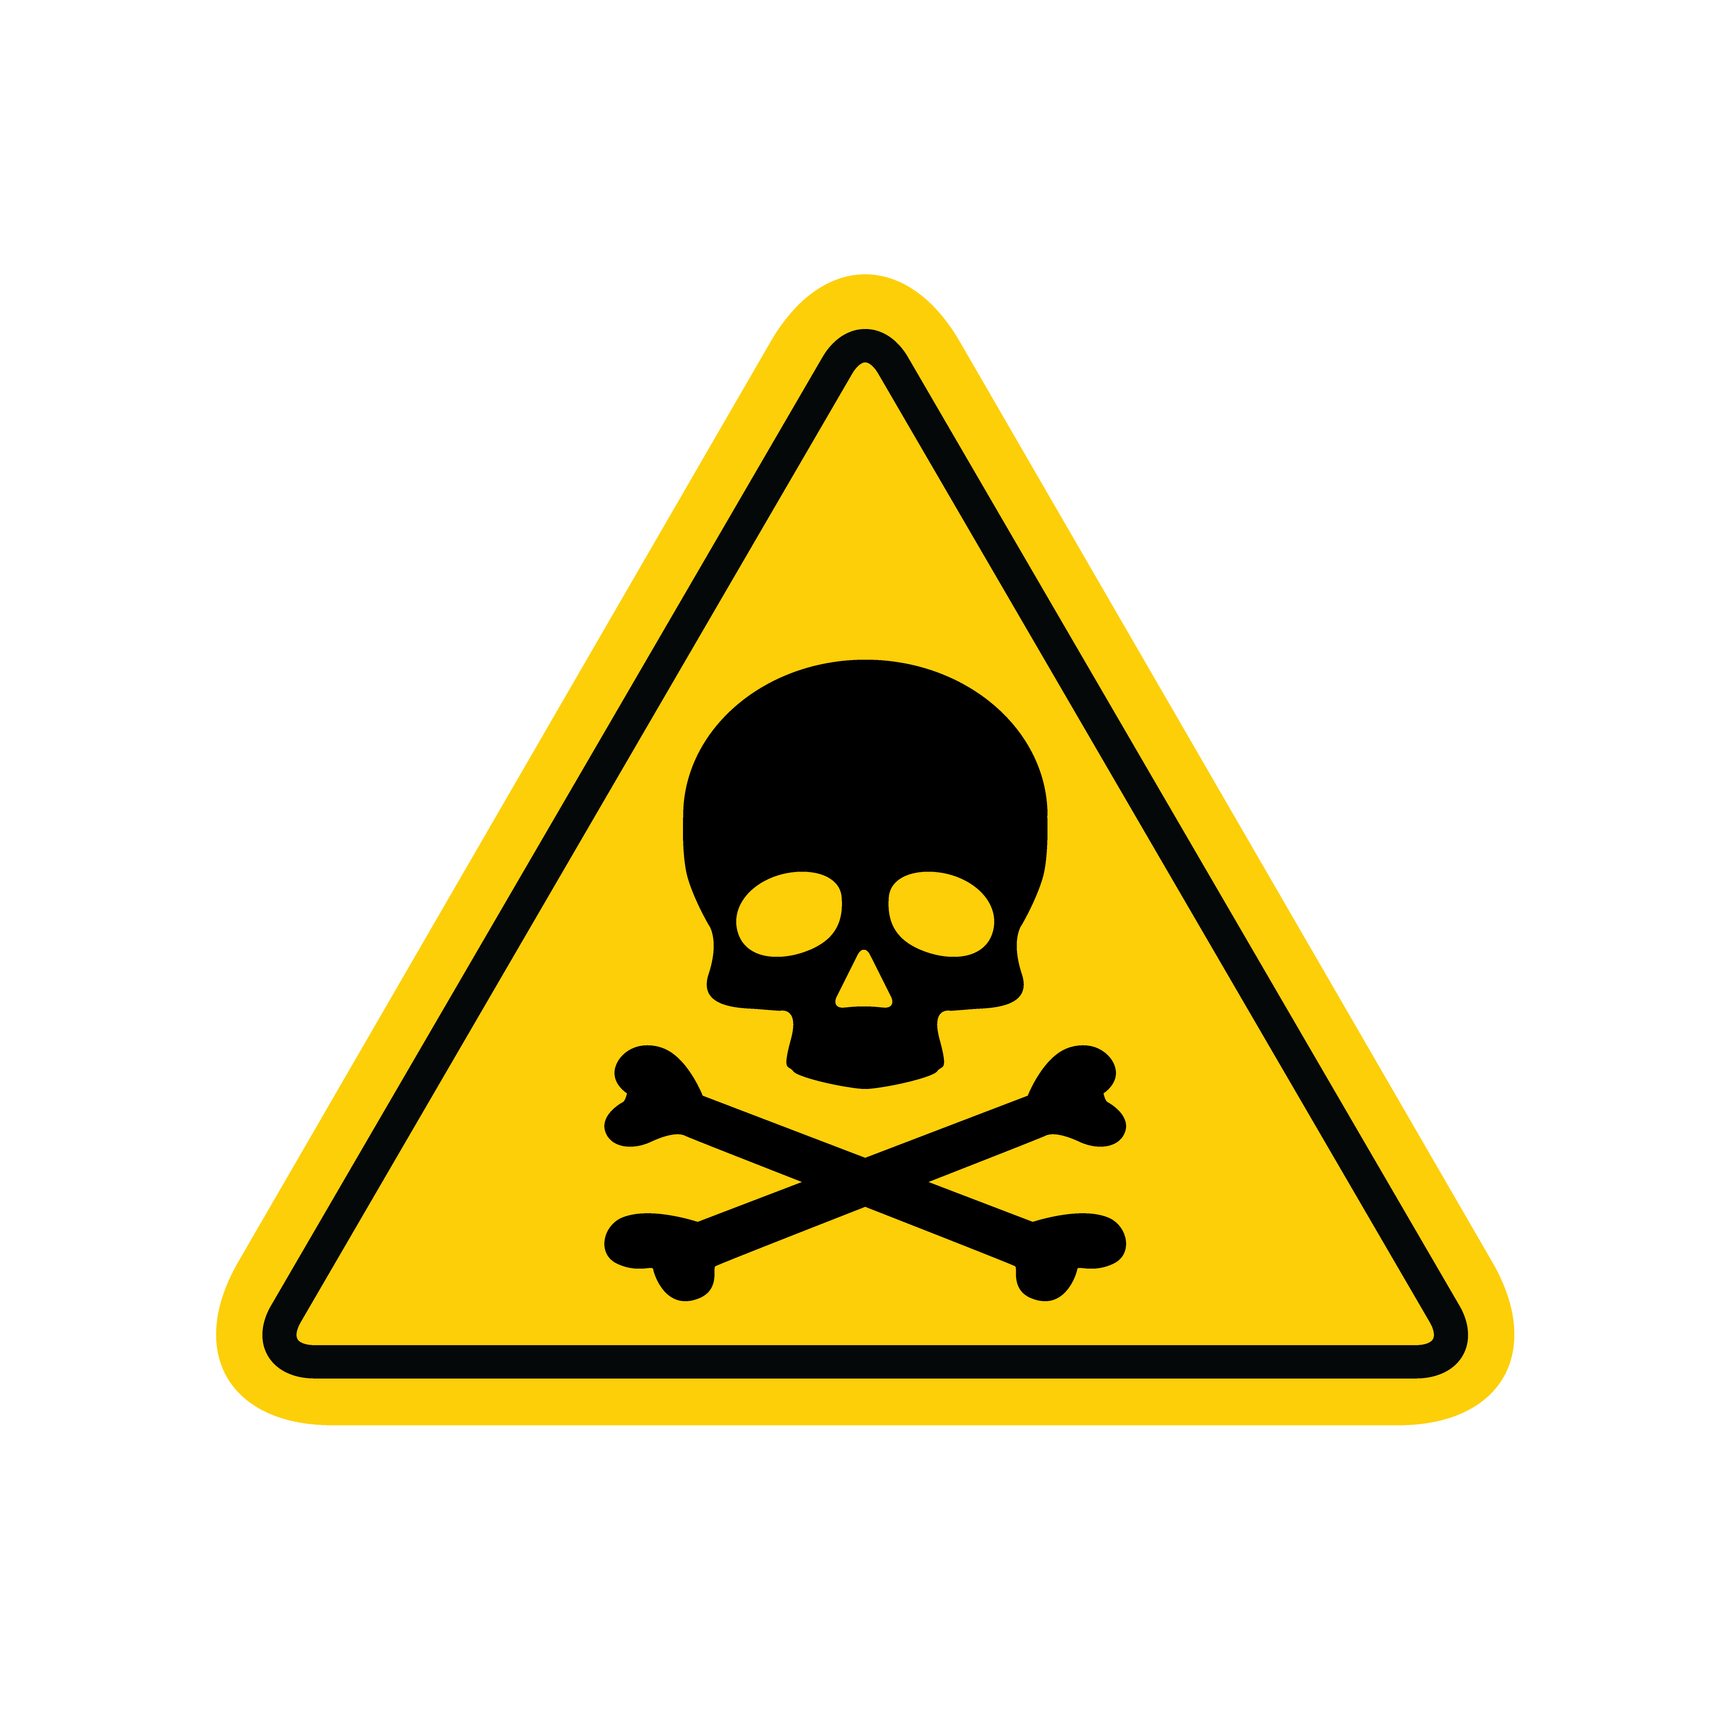 Toxic Warning Sign